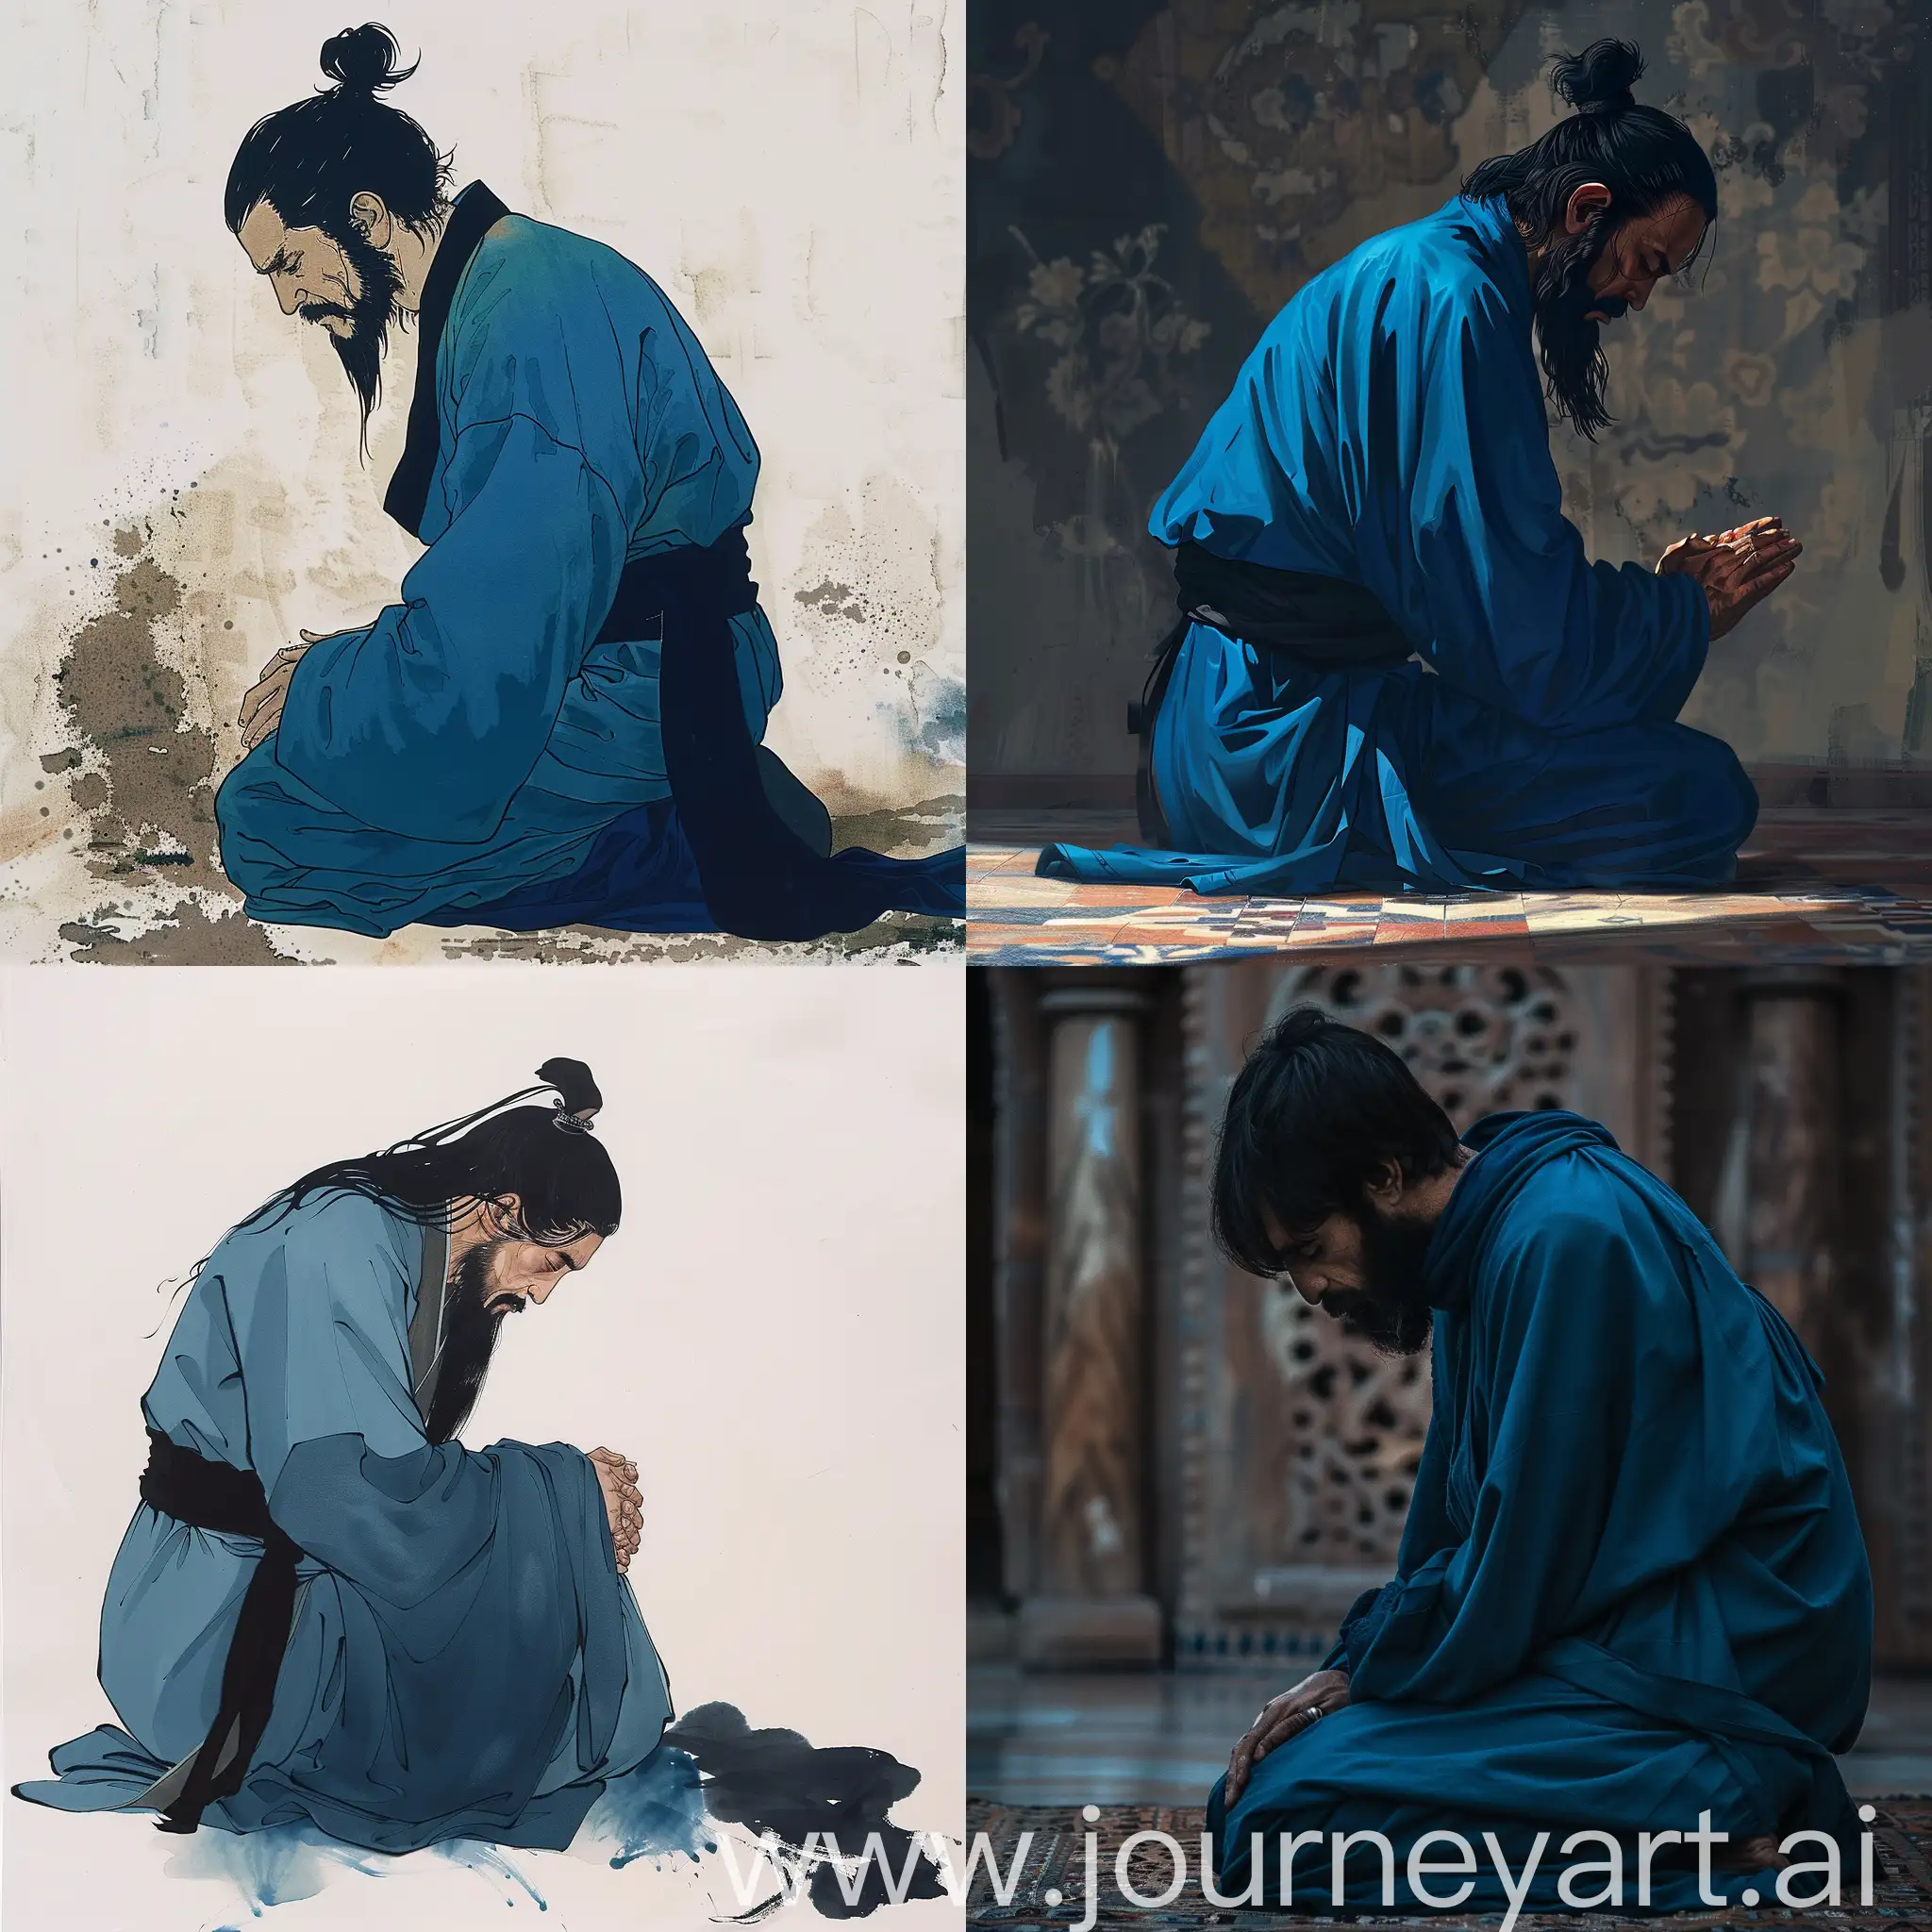 Monk-in-Blue-Habit-Kneeling-in-Prayer